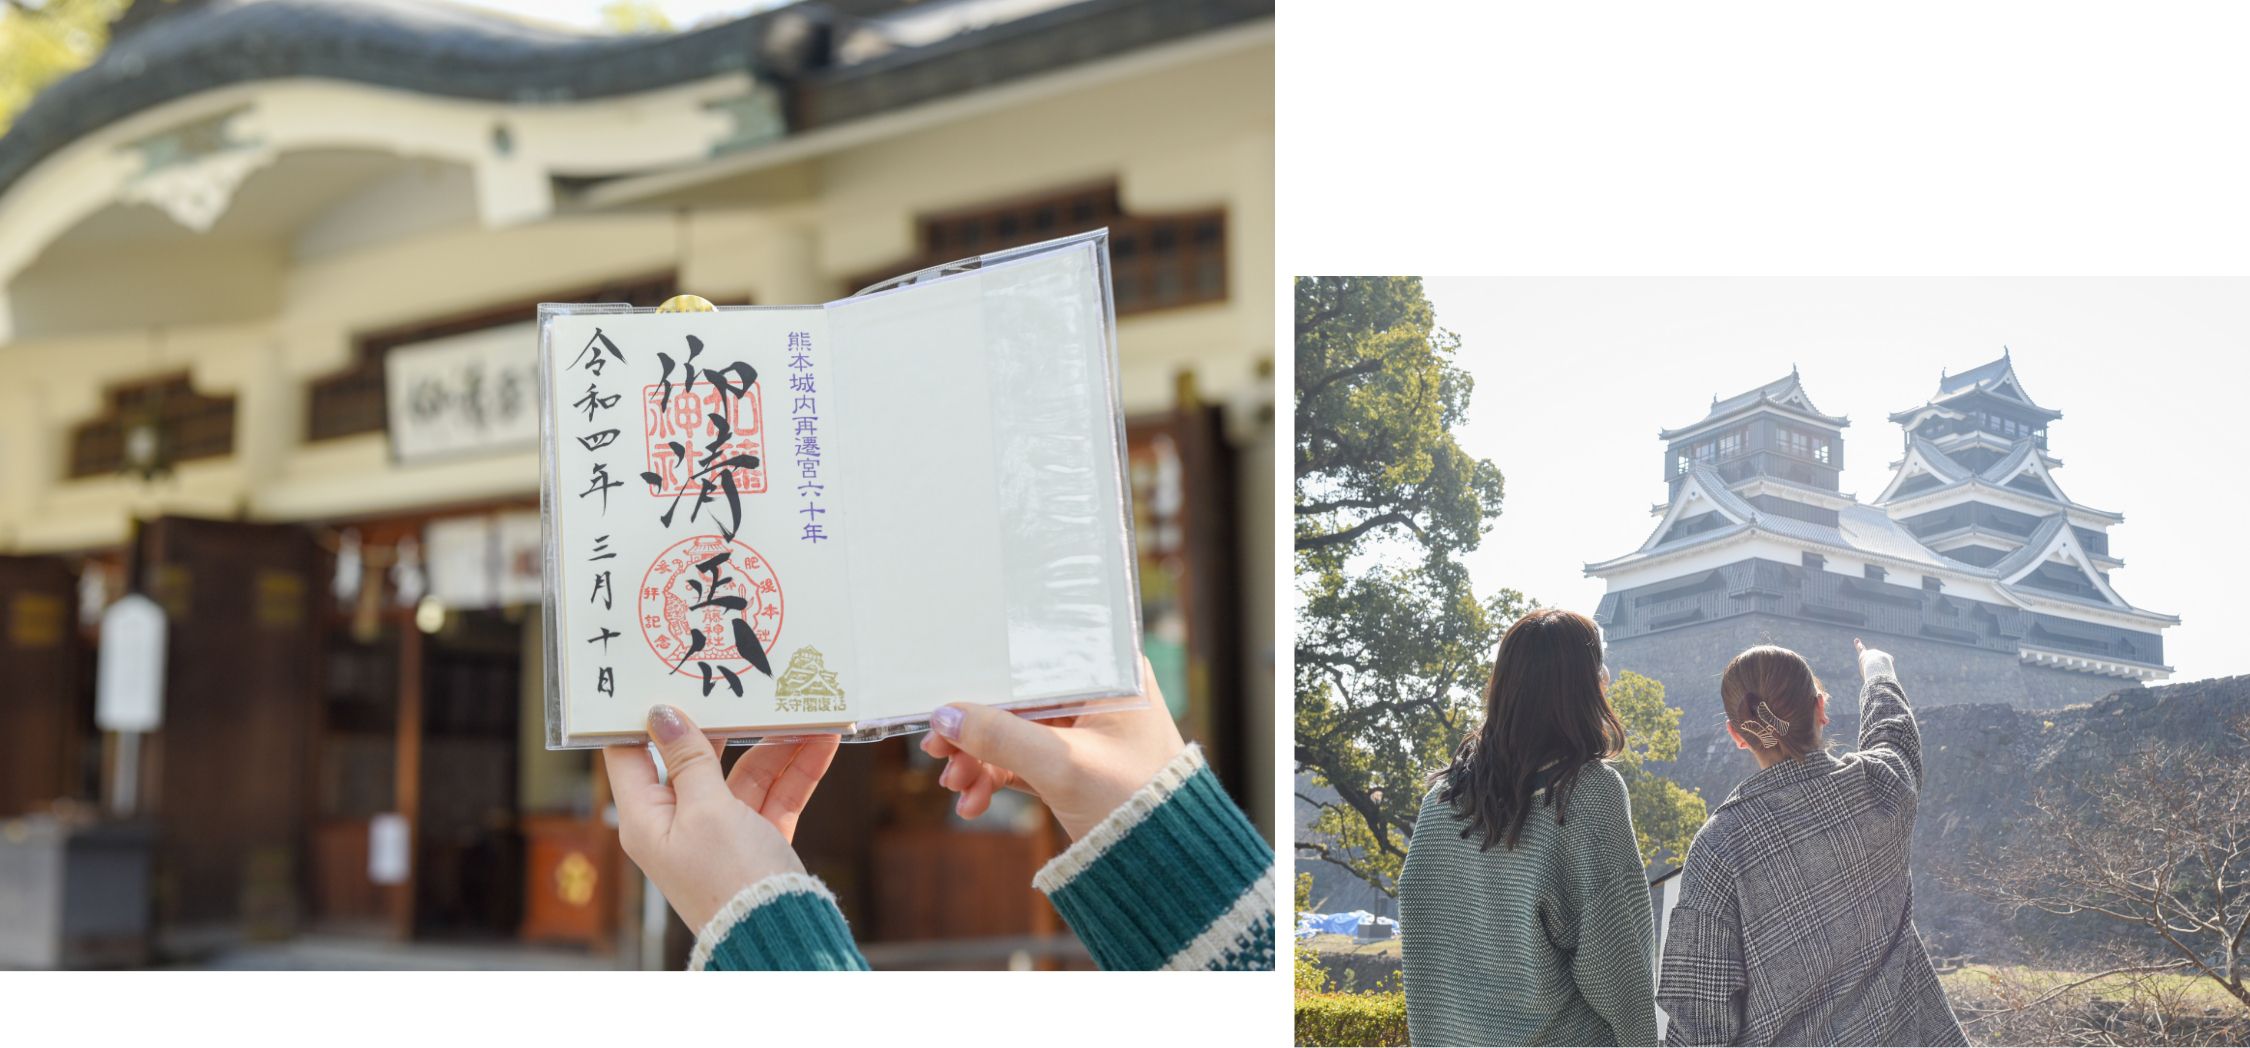 熊本城と加藤神社の御朱印の写真